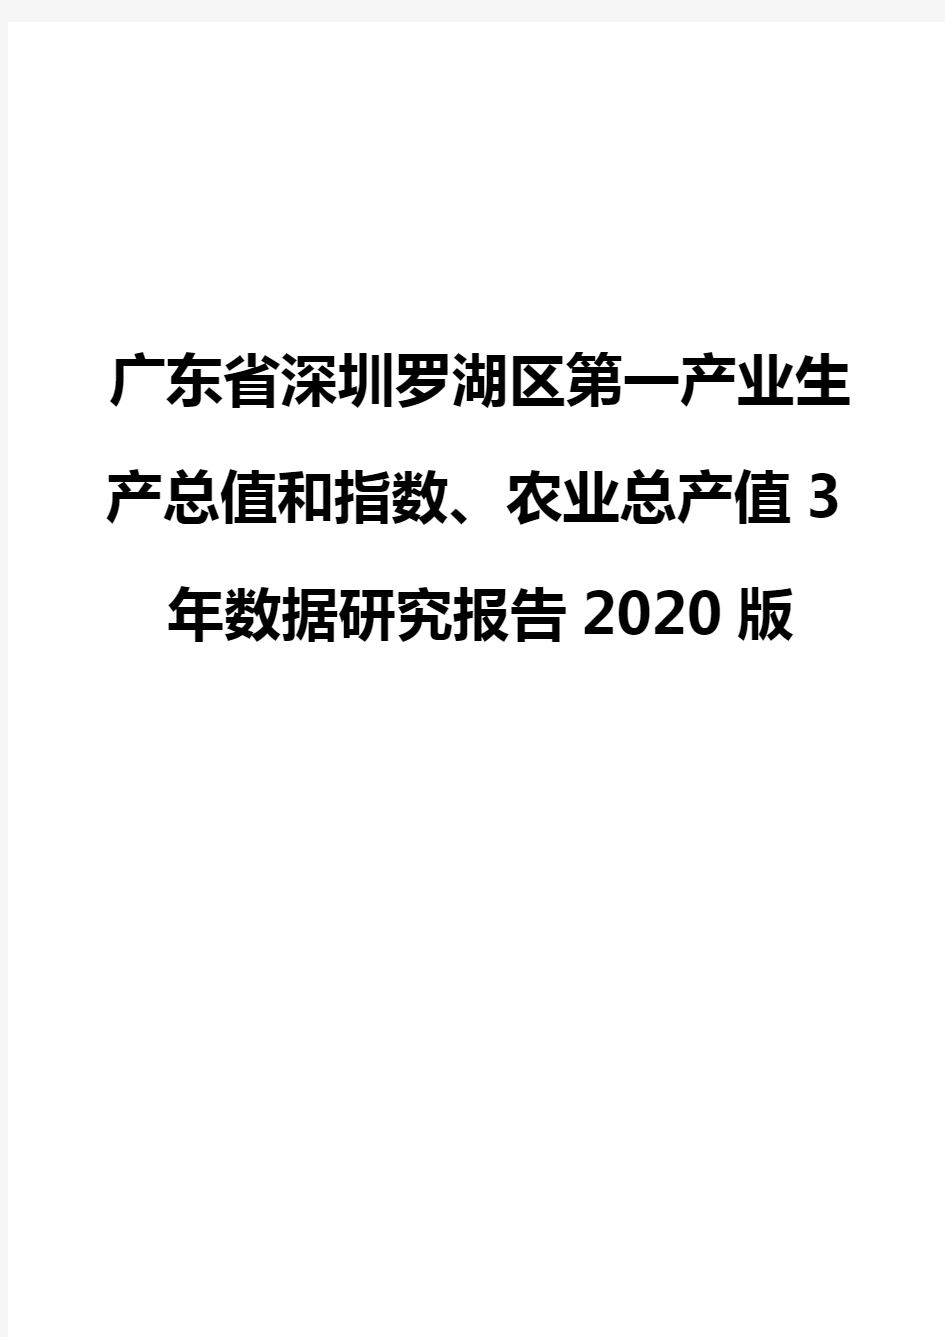 广东省深圳罗湖区第一产业生产总值和指数、农业总产值3年数据研究报告2020版